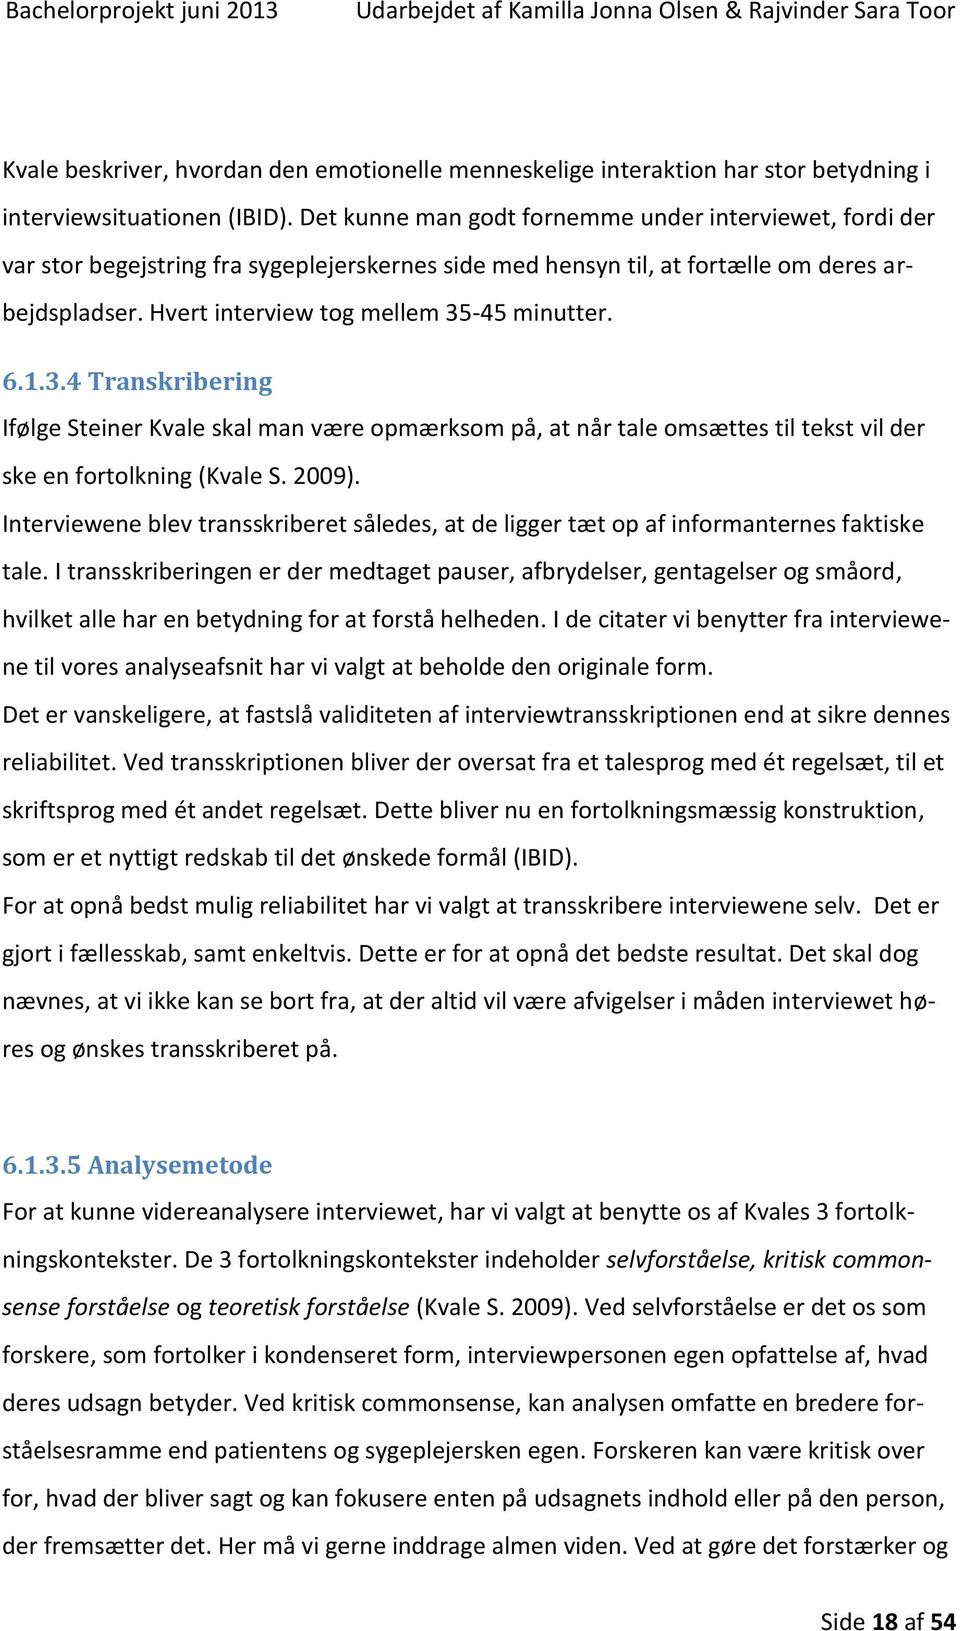 6.1.3.4 Transkribering Ifølge Steiner Kvale skal man være opmærksom på, at når tale omsættes til tekst vil der ske en fortolkning (Kvale S. 2009).